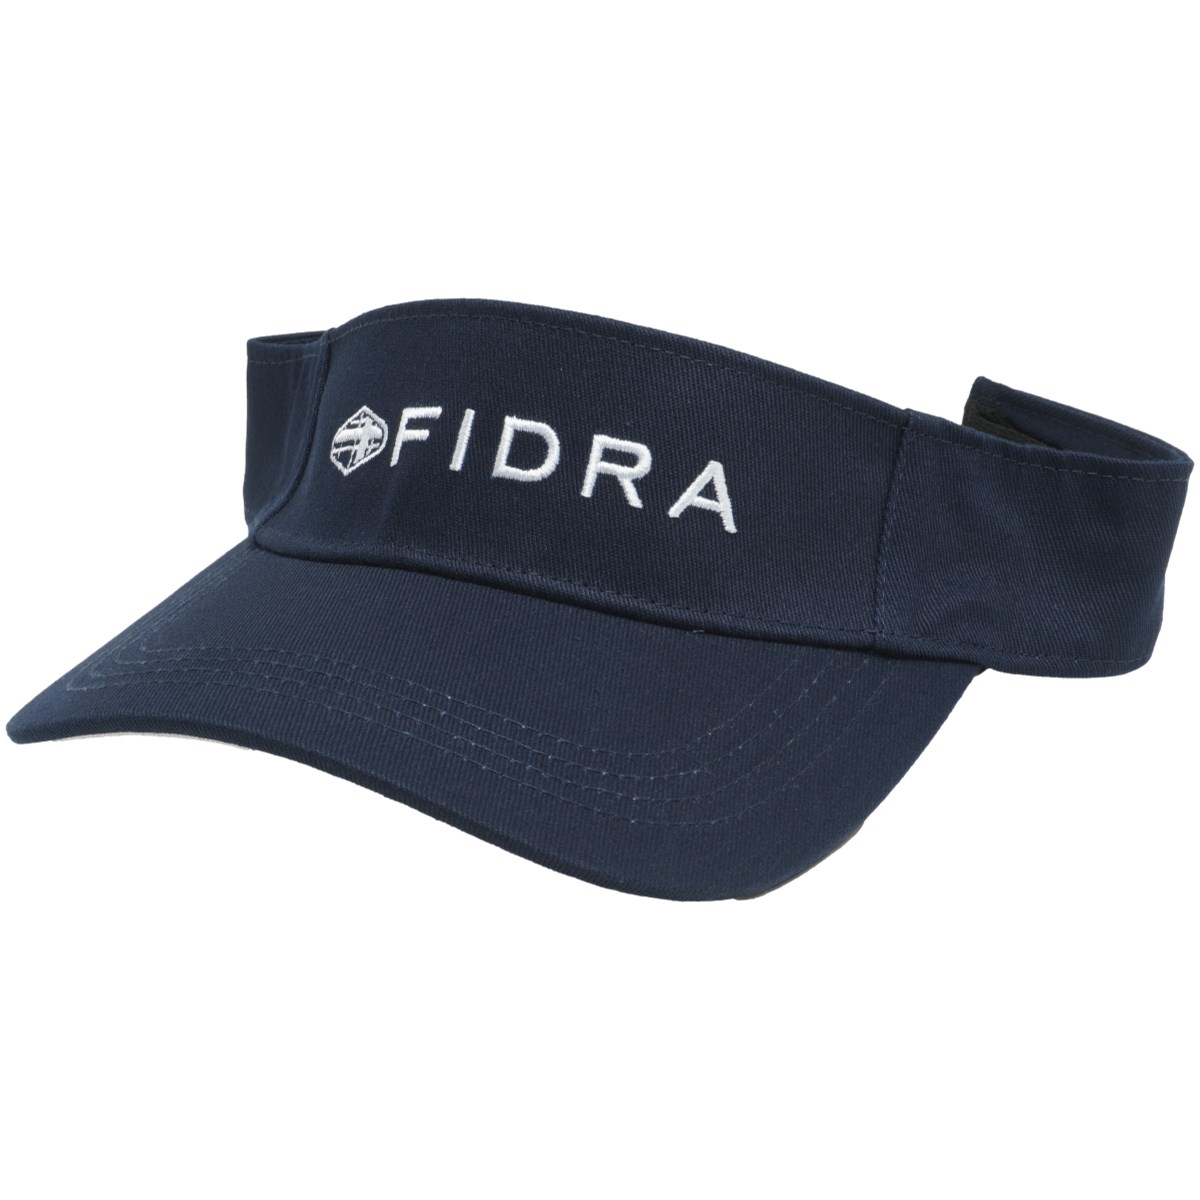 FIDRA サンバイザー